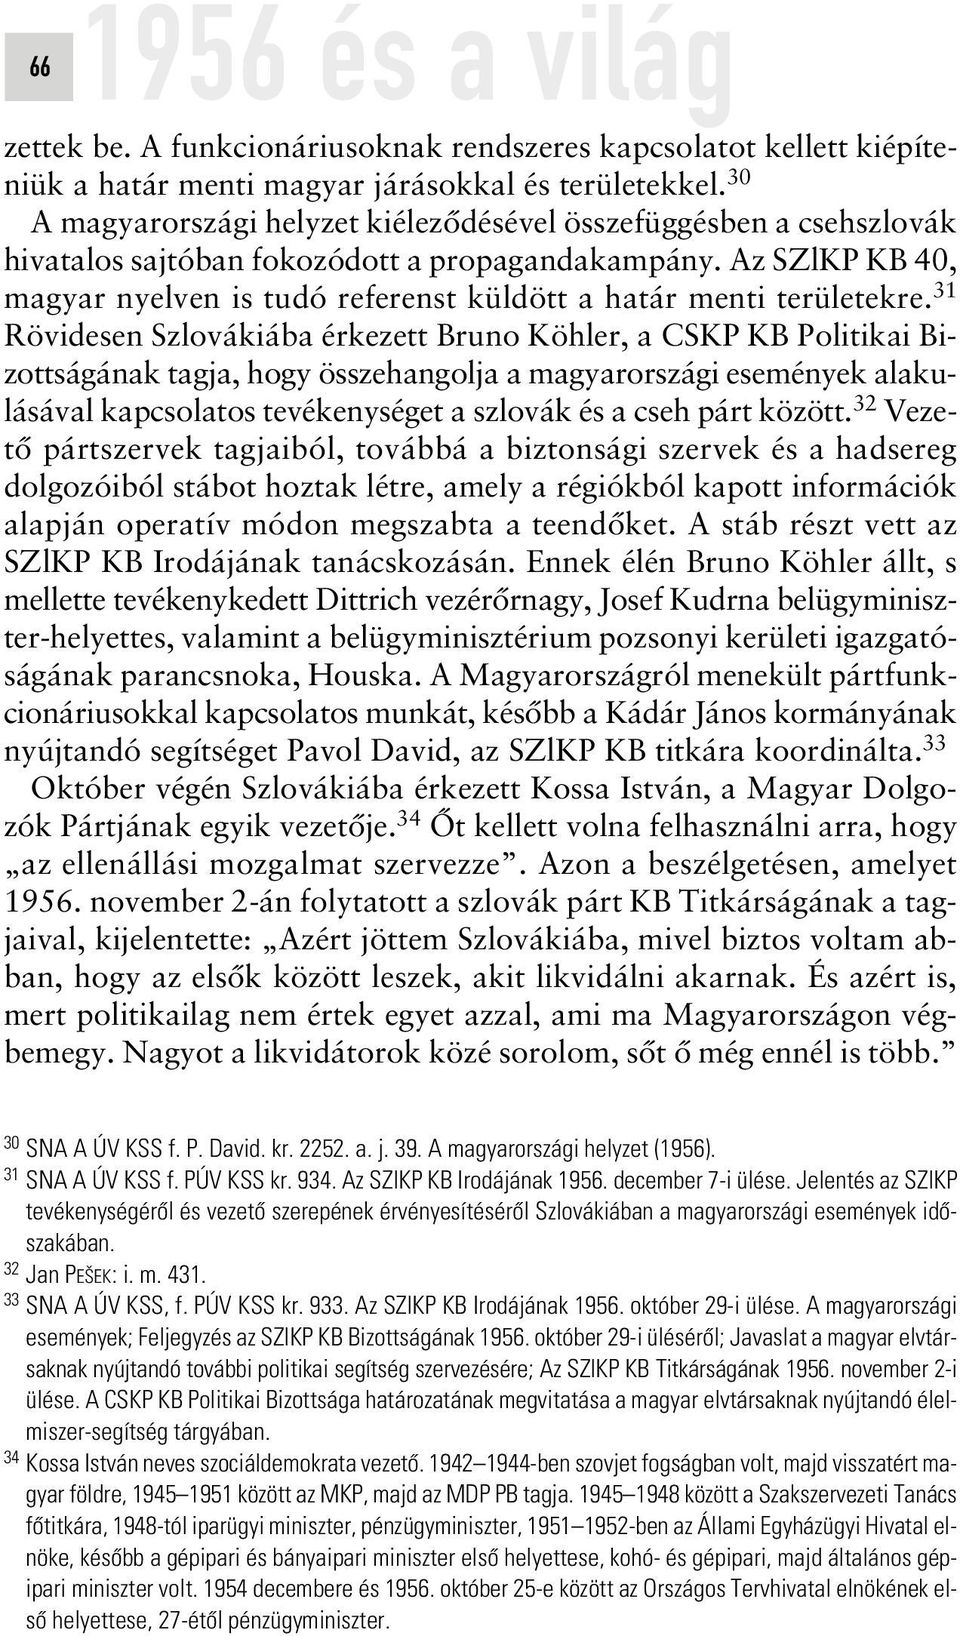 Az SZlKP KB 40, magyar nyelven is tudó referenst küldött a határ menti területekre.